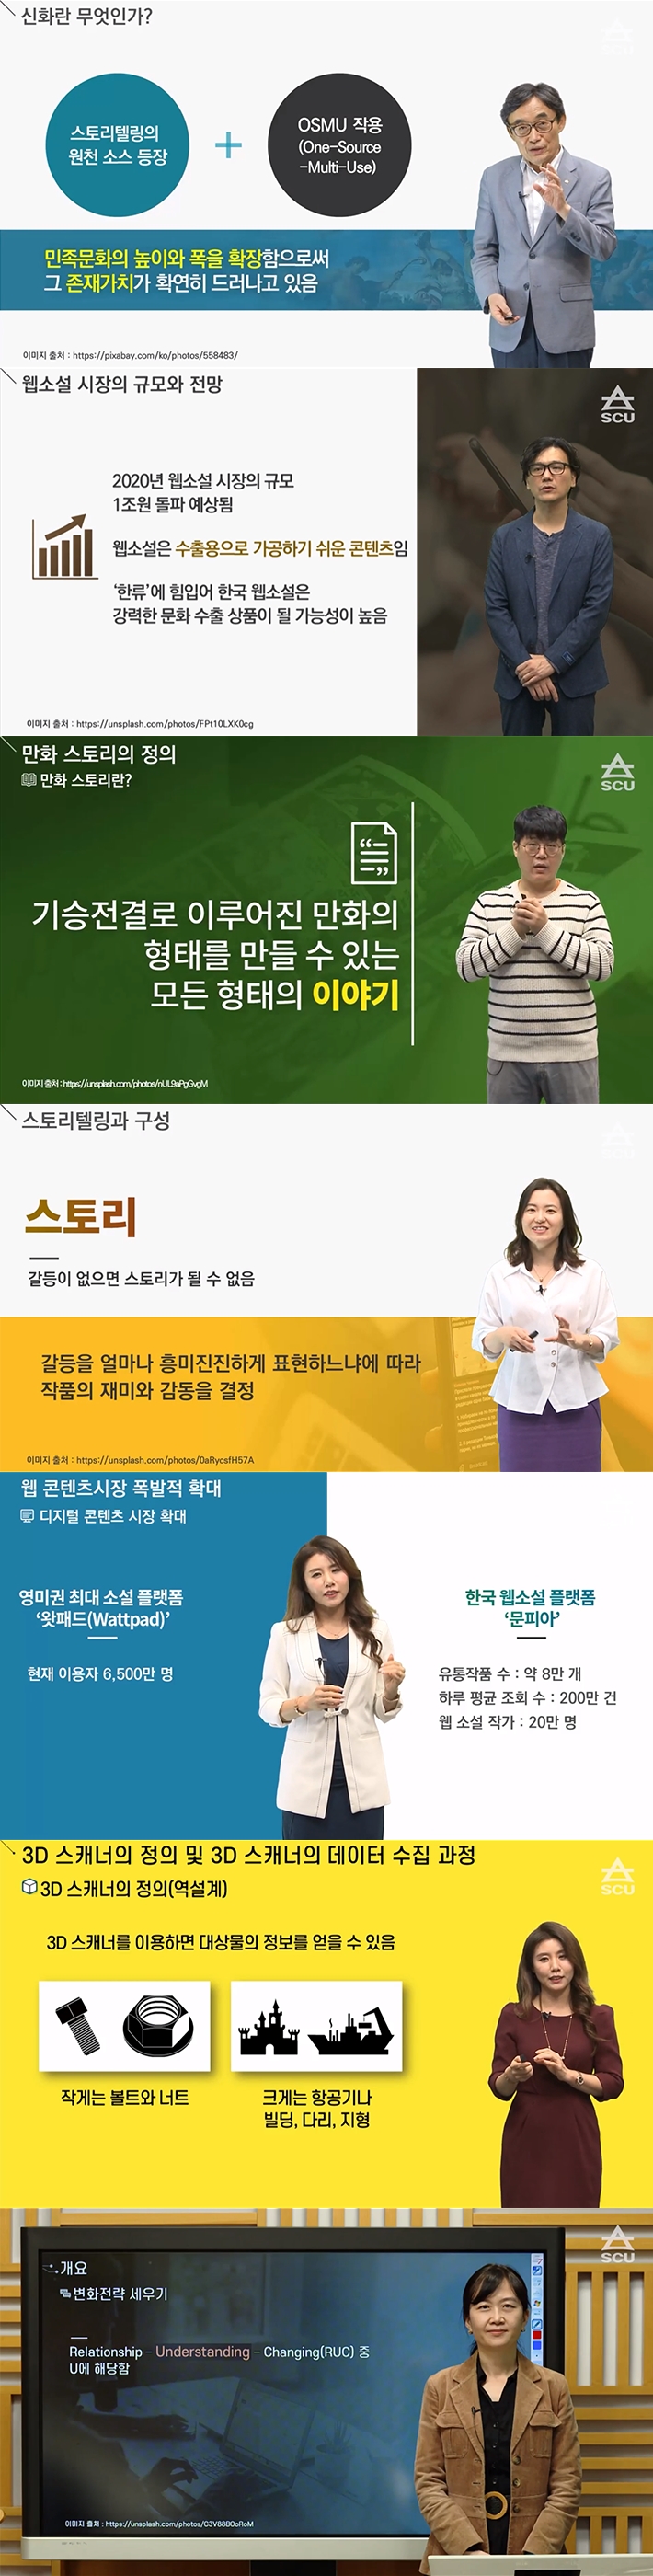 서울사이버대, K-MOOC 7개 과정 공개강좌 실시